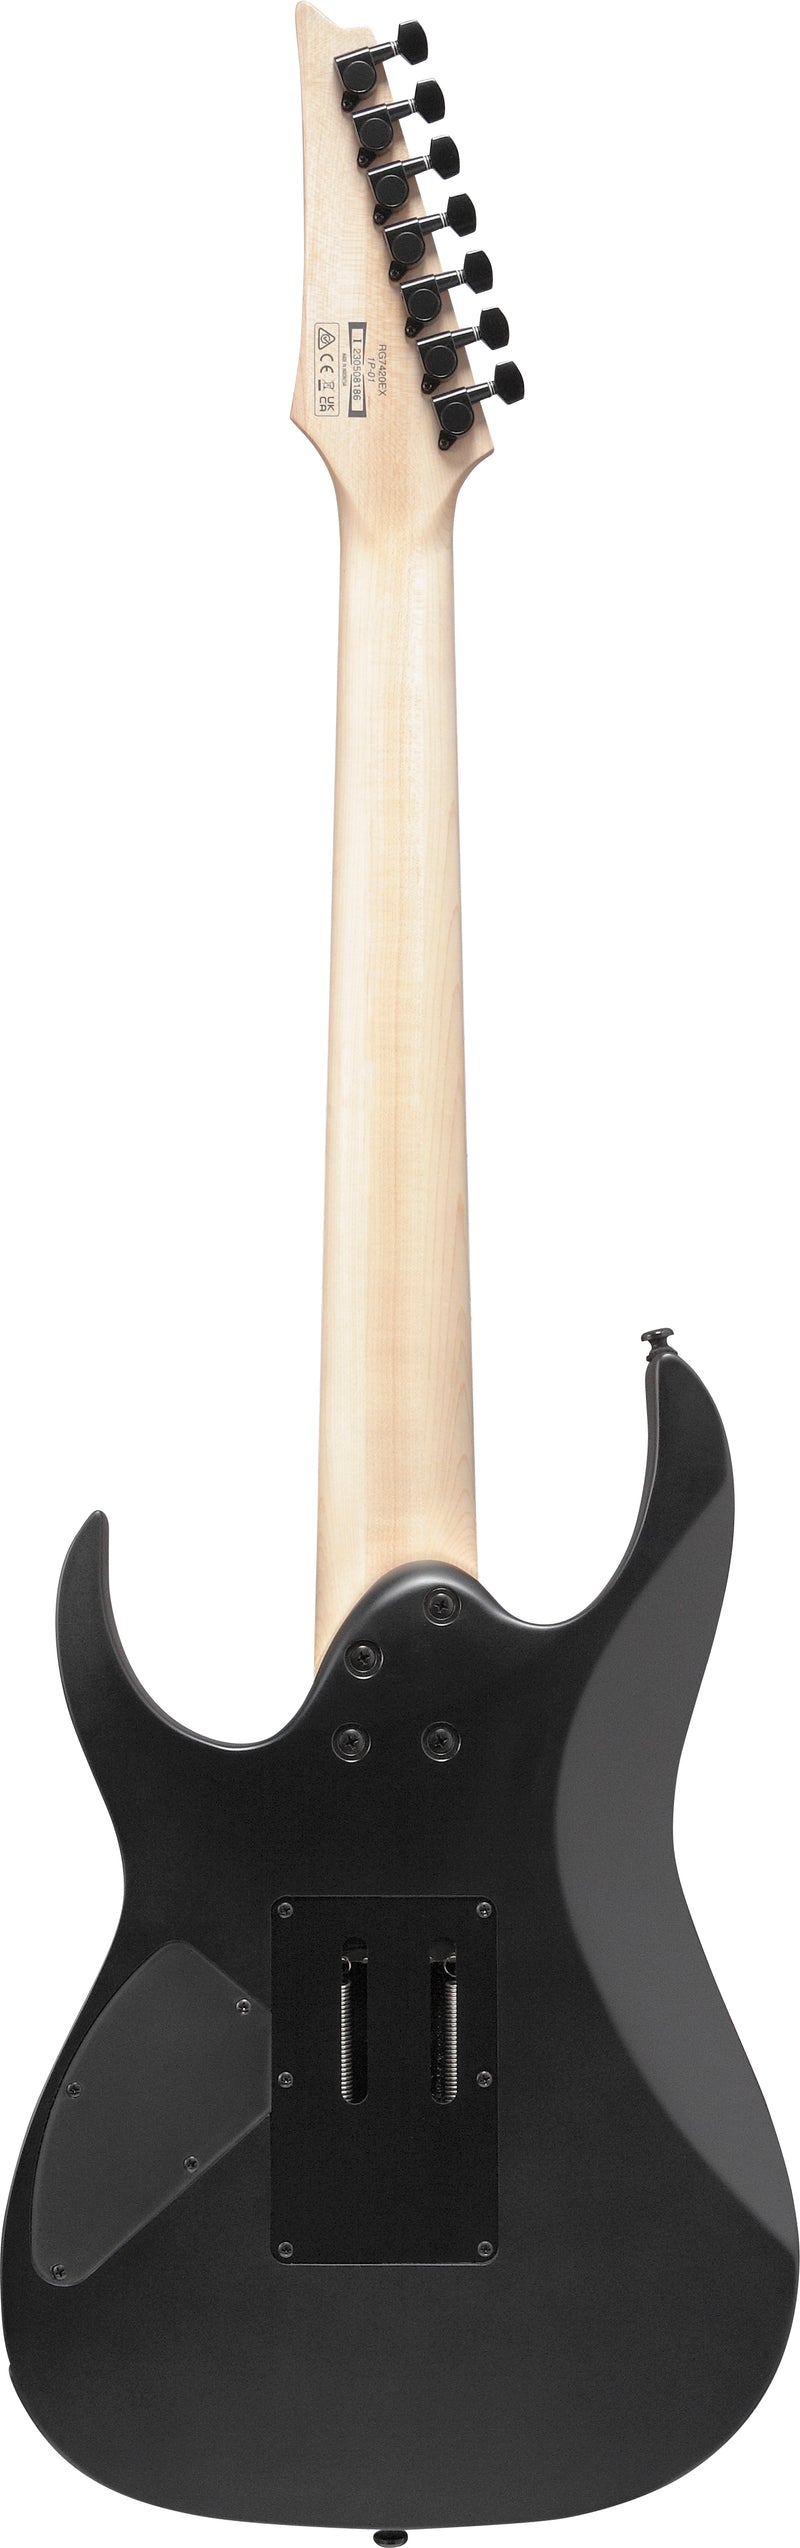 Ibanez RG7420EXBKF RG Guitare électrique standard 7 cordes (noir plat)